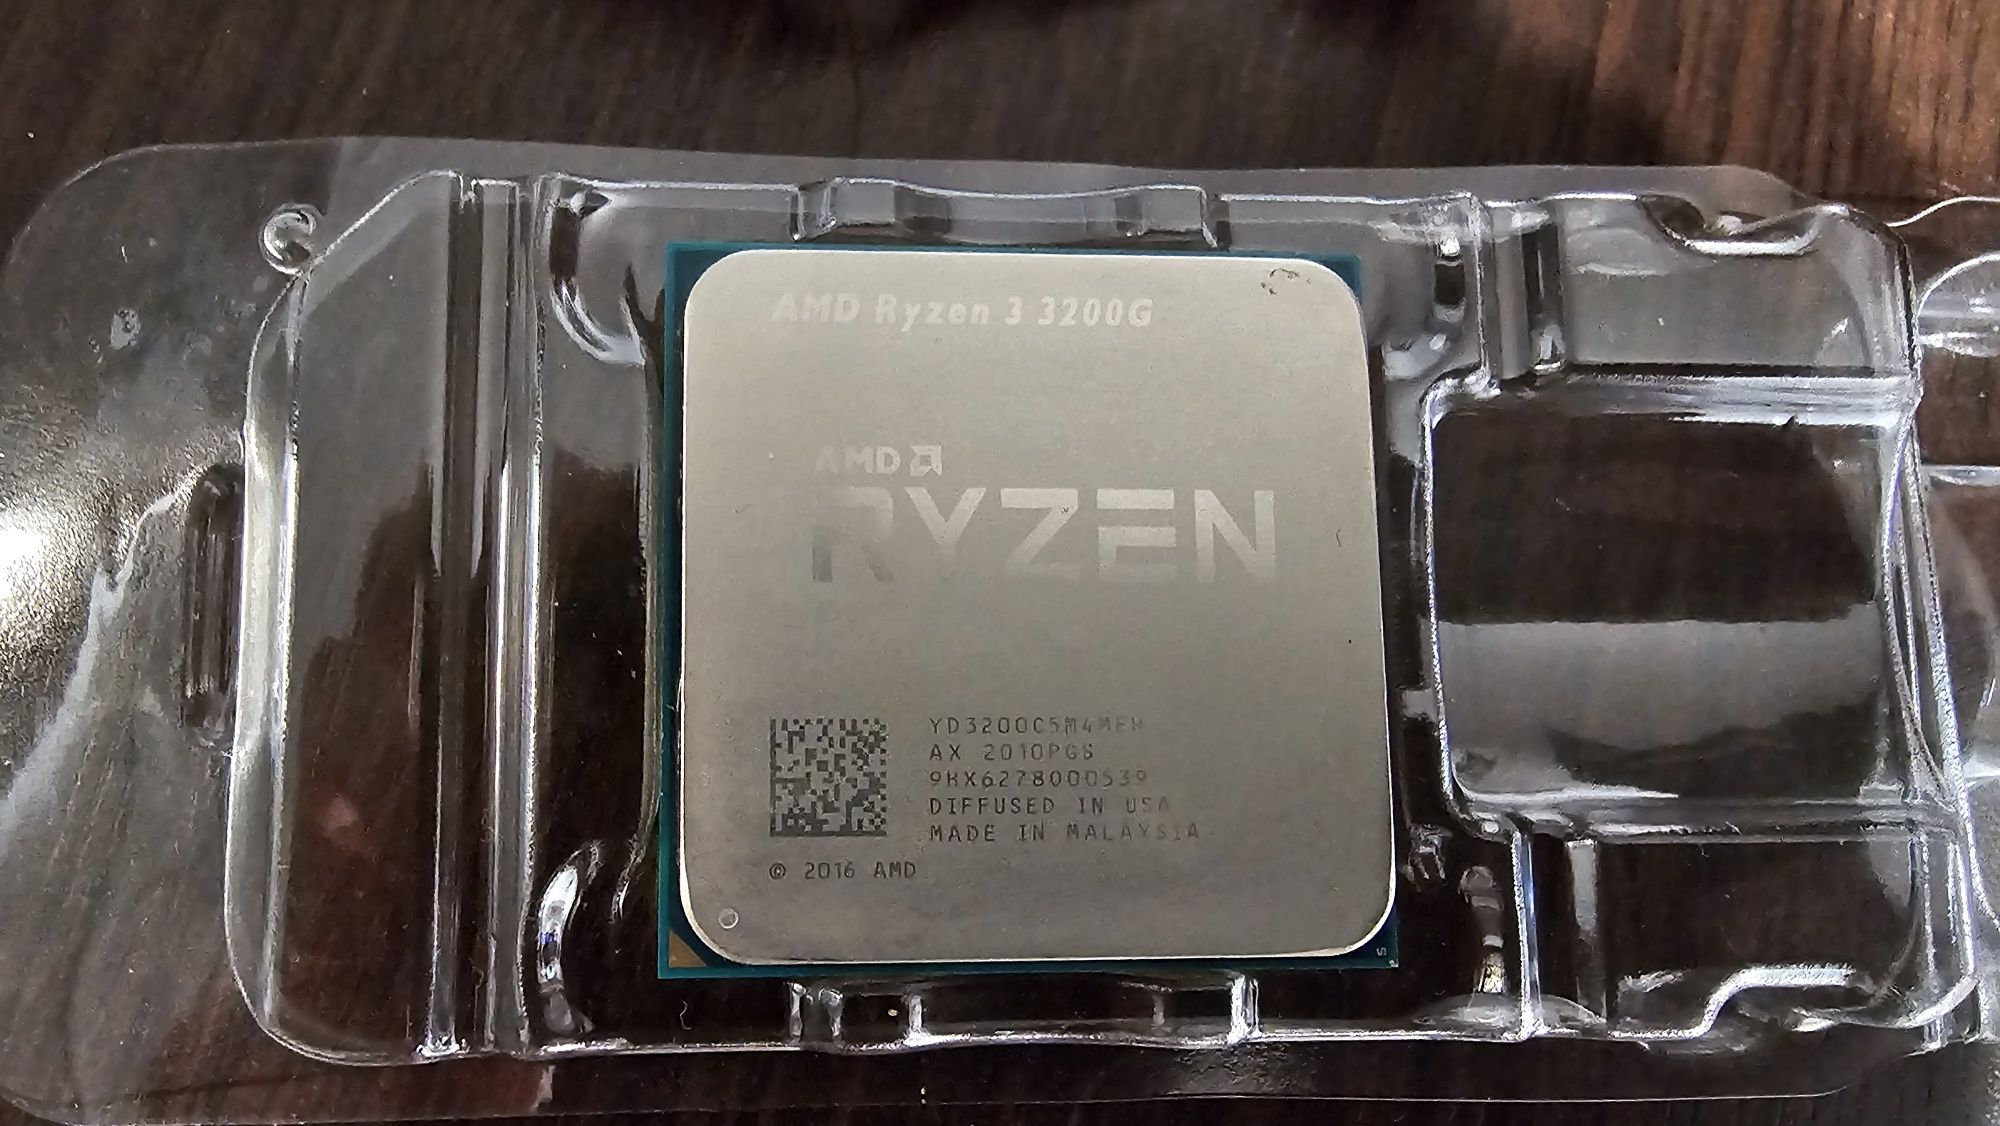 Procesor Ryzen 3 3200g